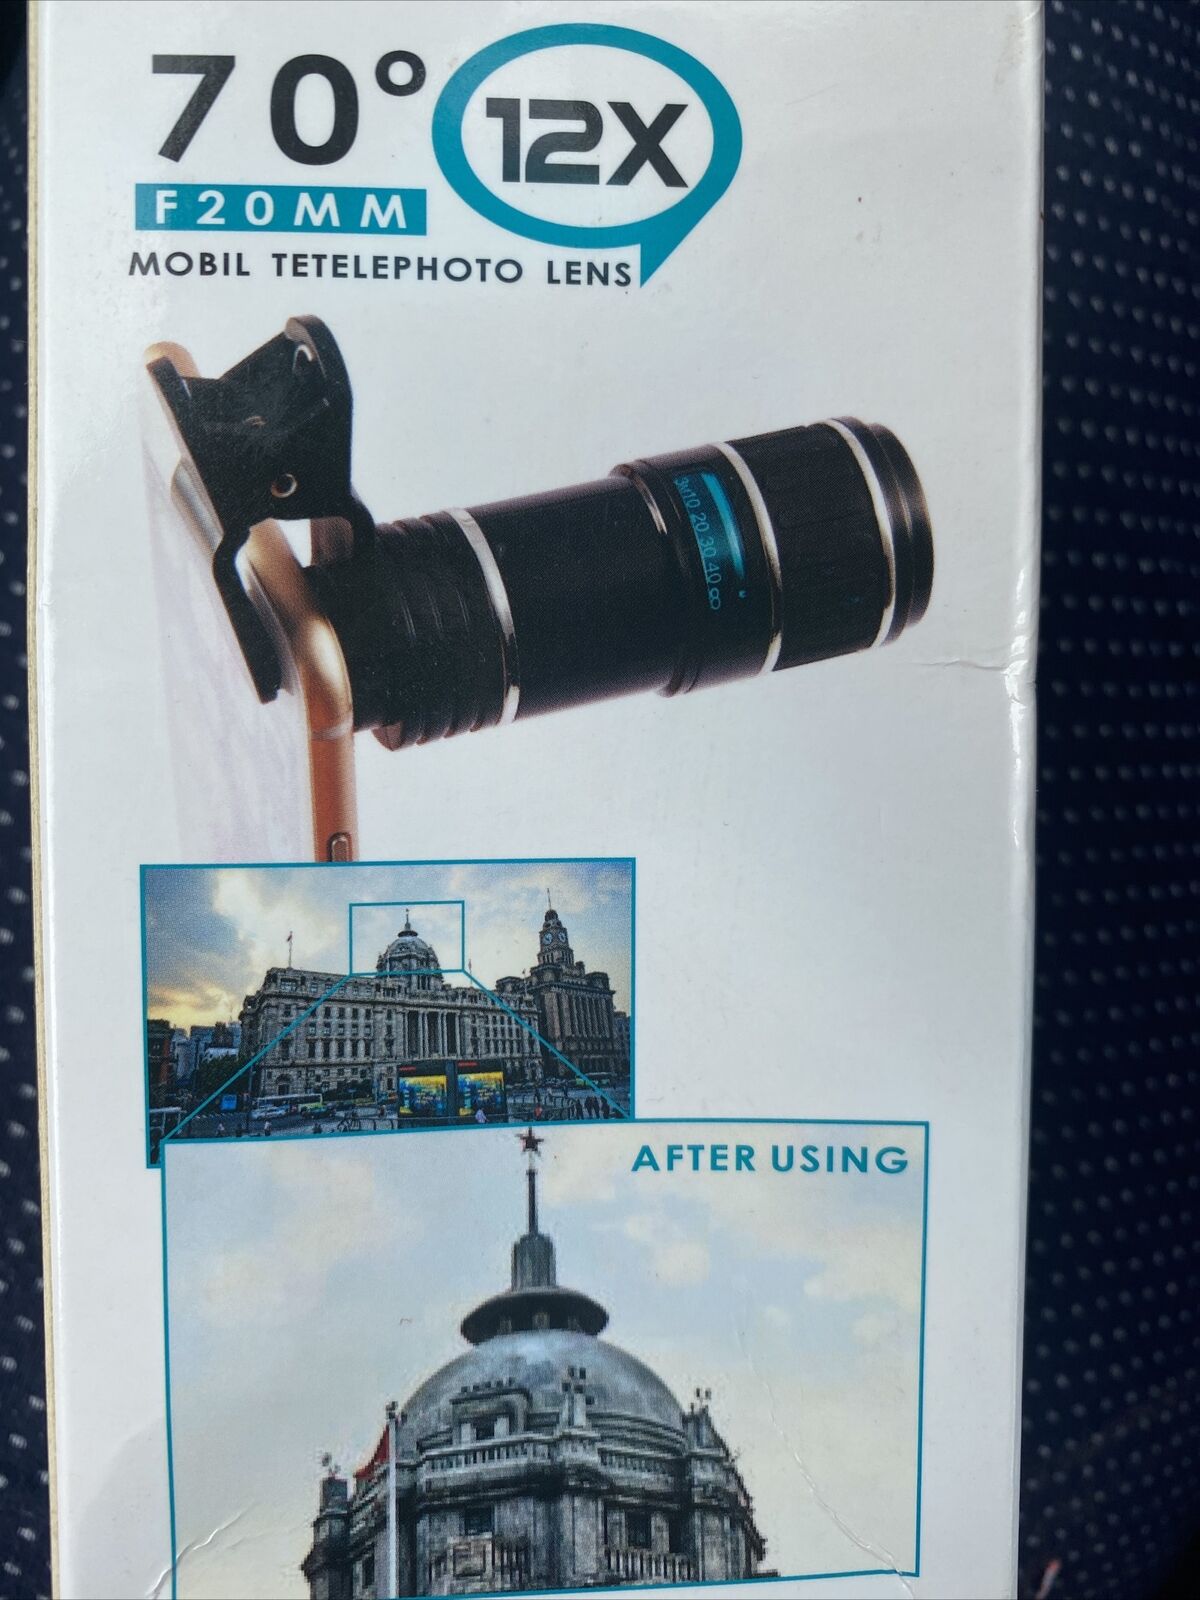 70 F20mm 12X Mobile Tetelphoto Lens